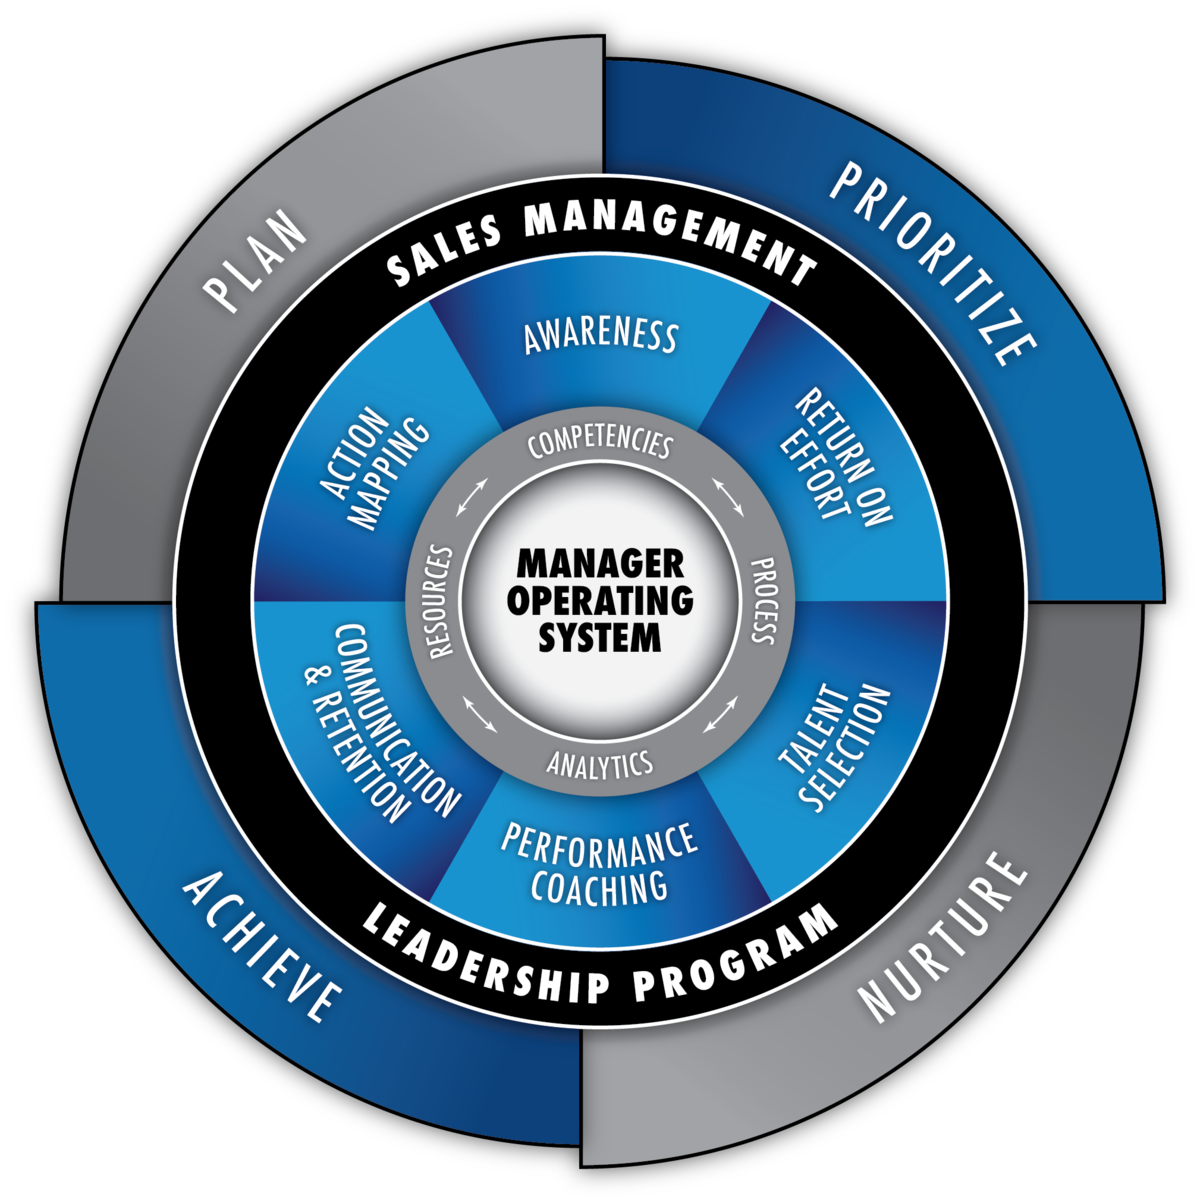 Sales Management Leadership Program Model